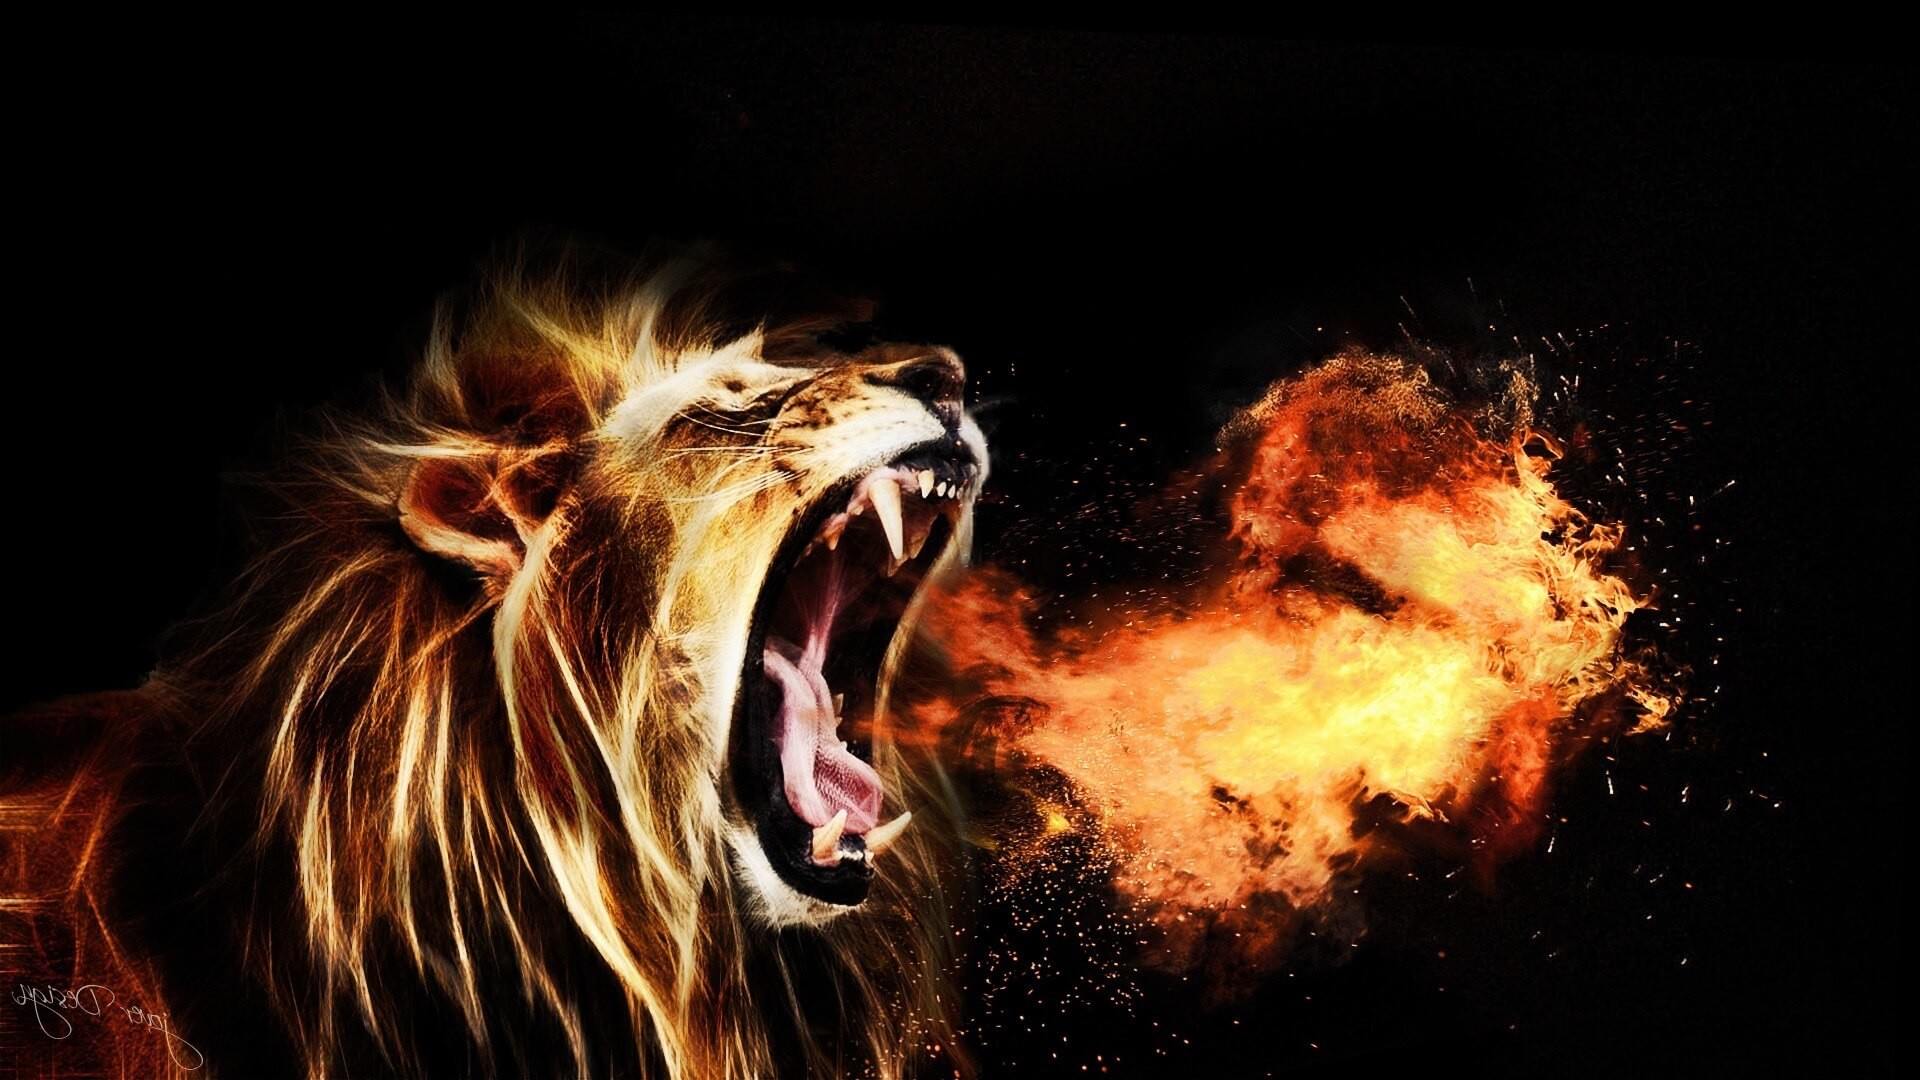 león enojado fondo de pantalla hd,león,rugido,felidae,grandes felinos,oscuridad